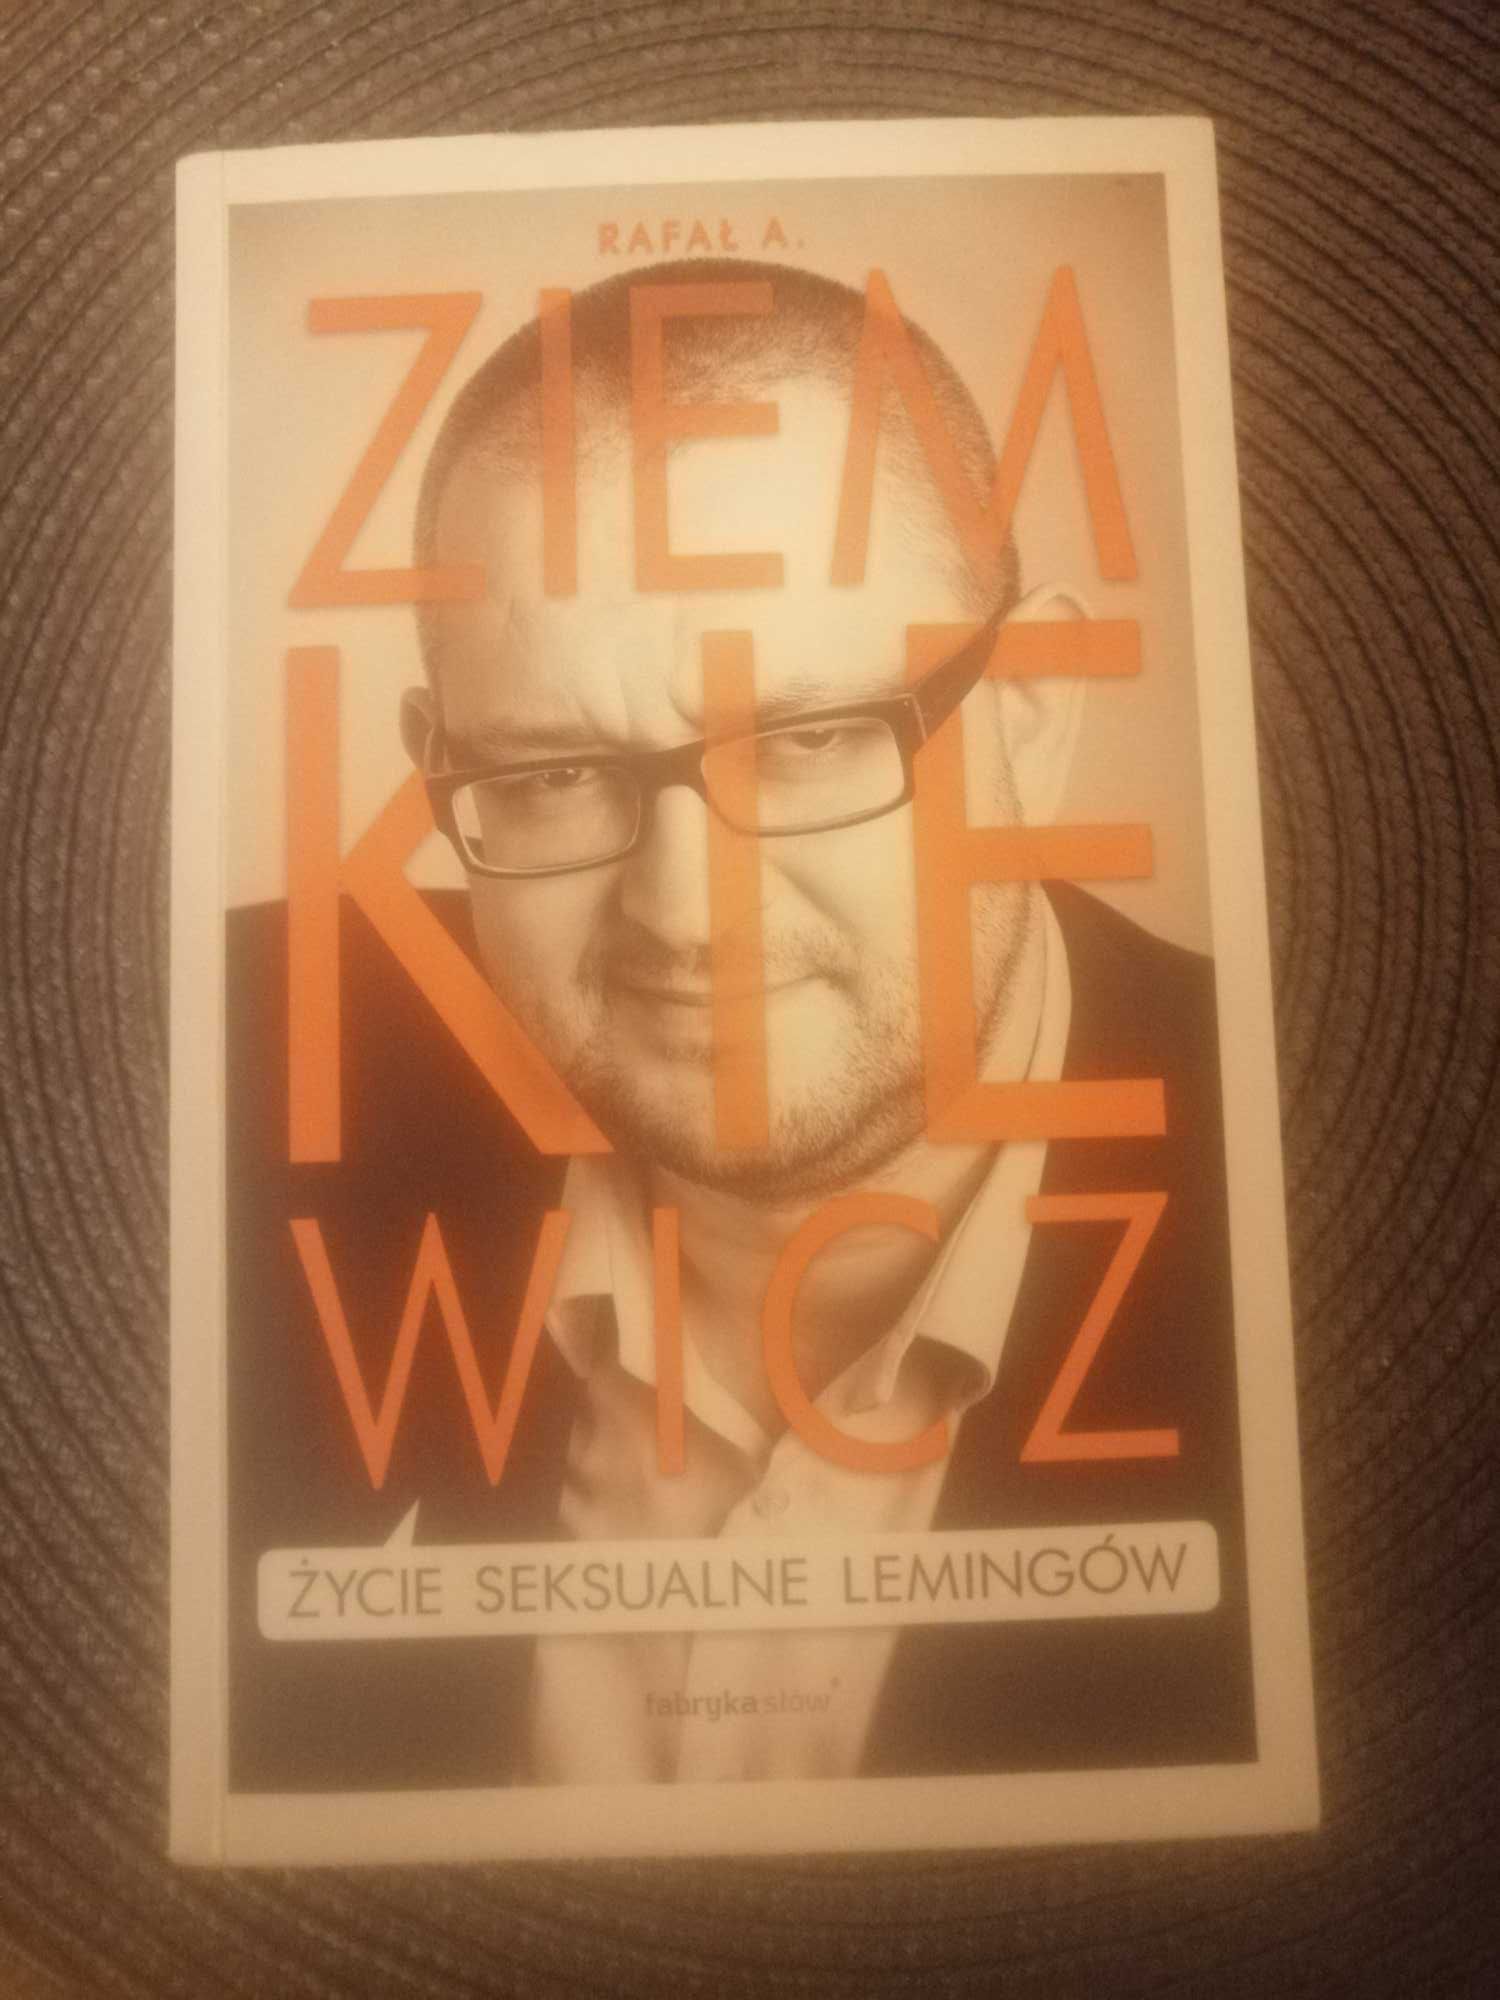 Życie seksualne lemingów . Rafał Ziemkiewicz